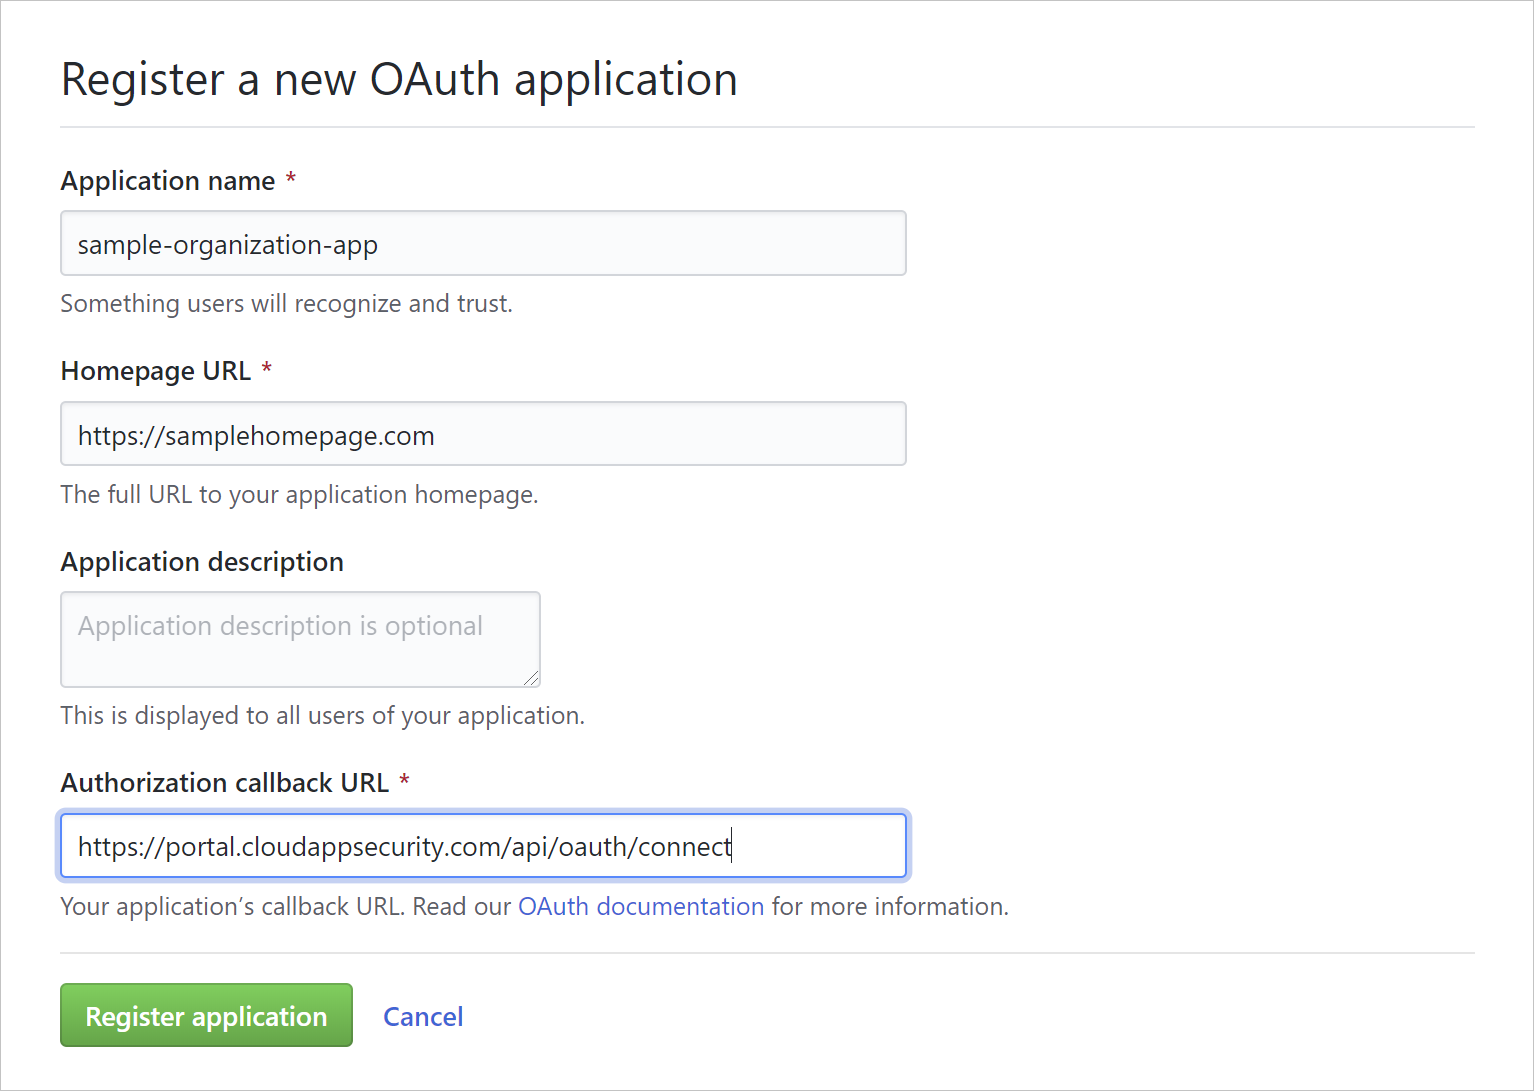 Schermopname van het registreren van een oauth-app.